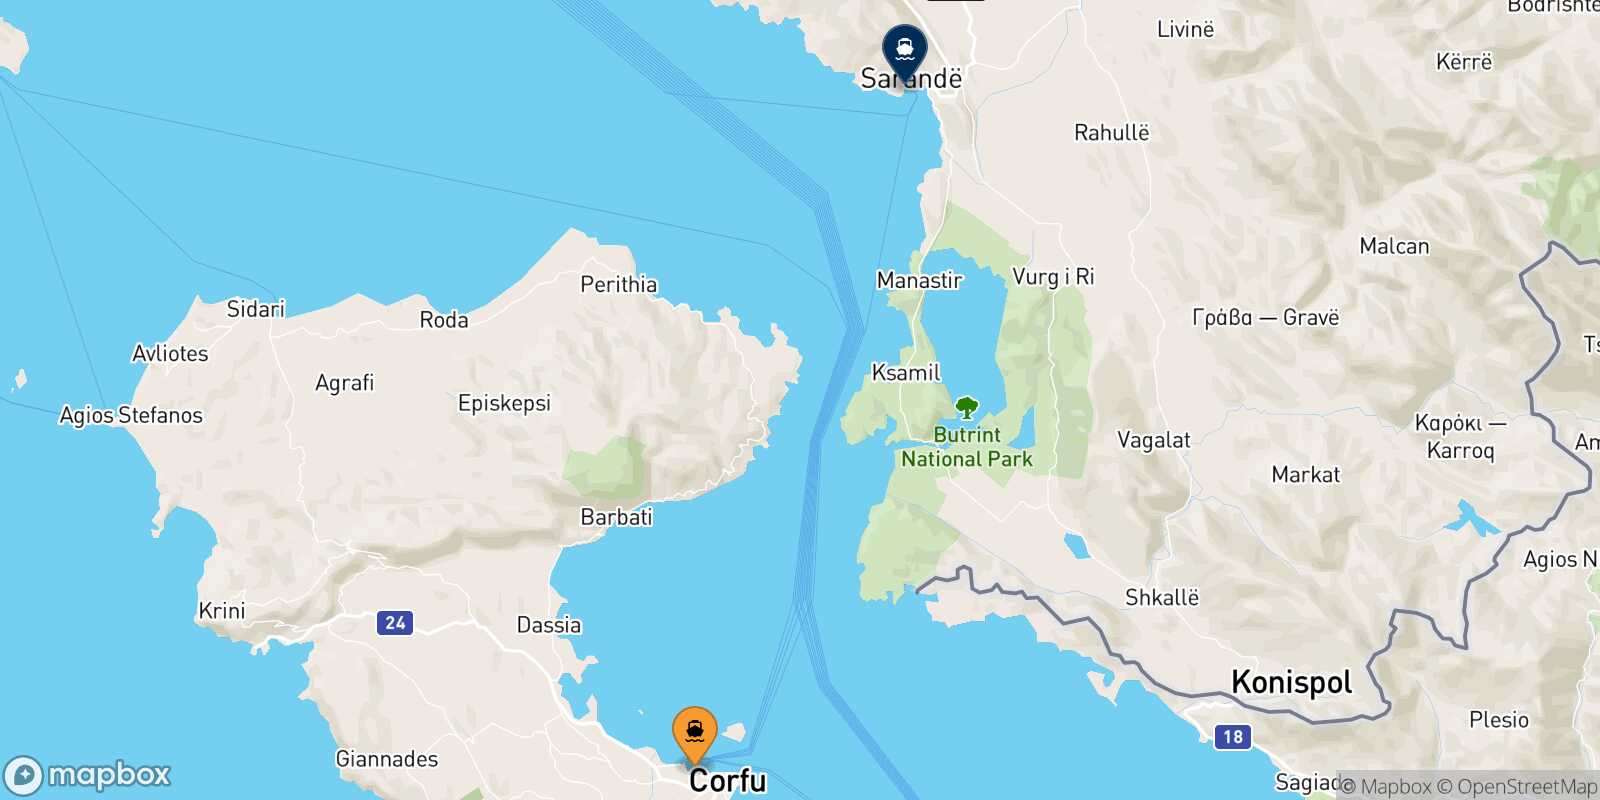 Mapa de la ruta Corfu Saranda